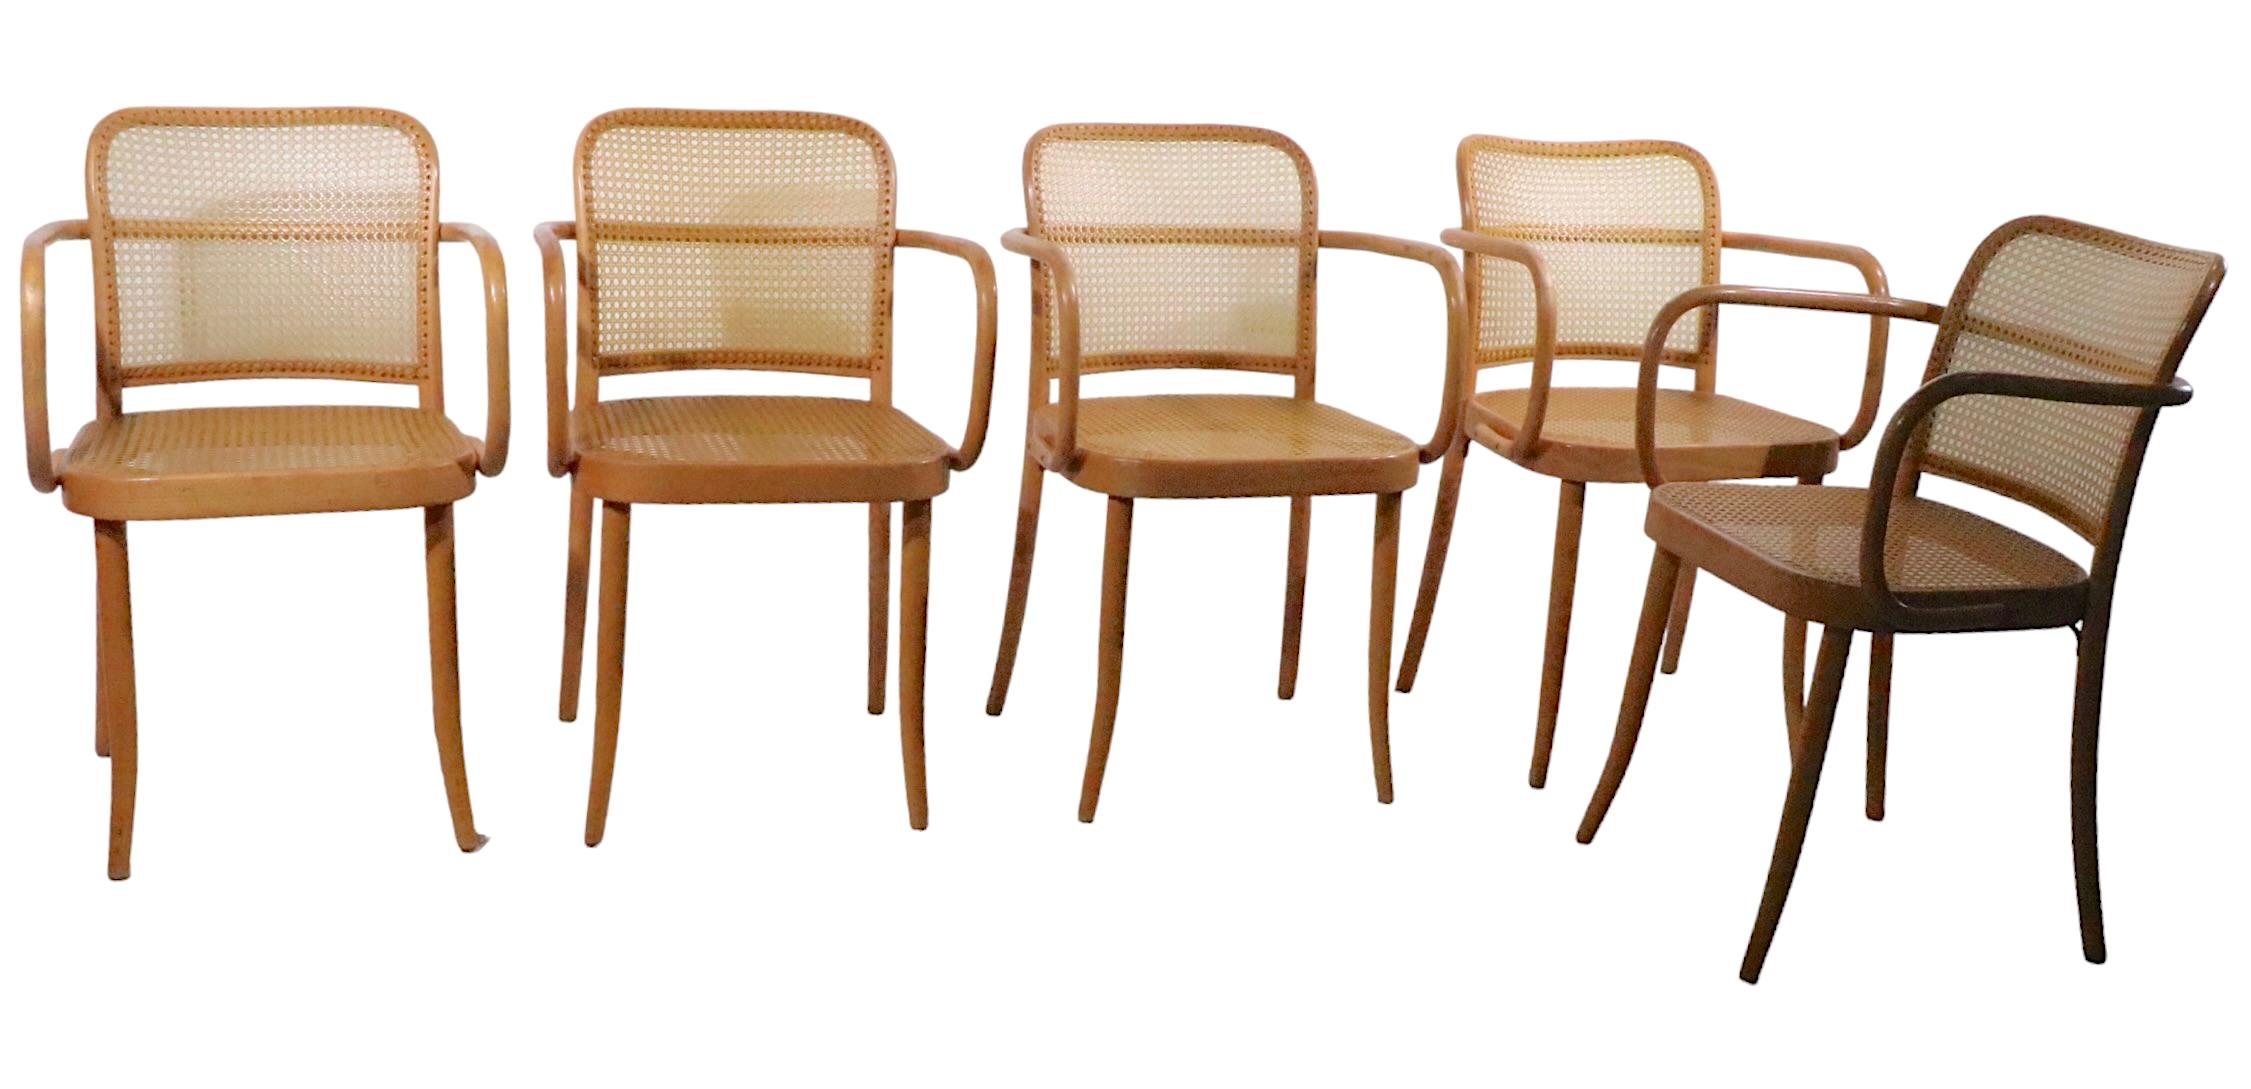 Exceptionnel ensemble de cinq fauteuils en bois courbé, design attribué à Josef Frank, marqué Made in Czechoslovakia. Les chaises sont fabriquées en bois courbé à la vapeur, probablement du hêtre, et en nylon, vers les années 1970. Version du milieu